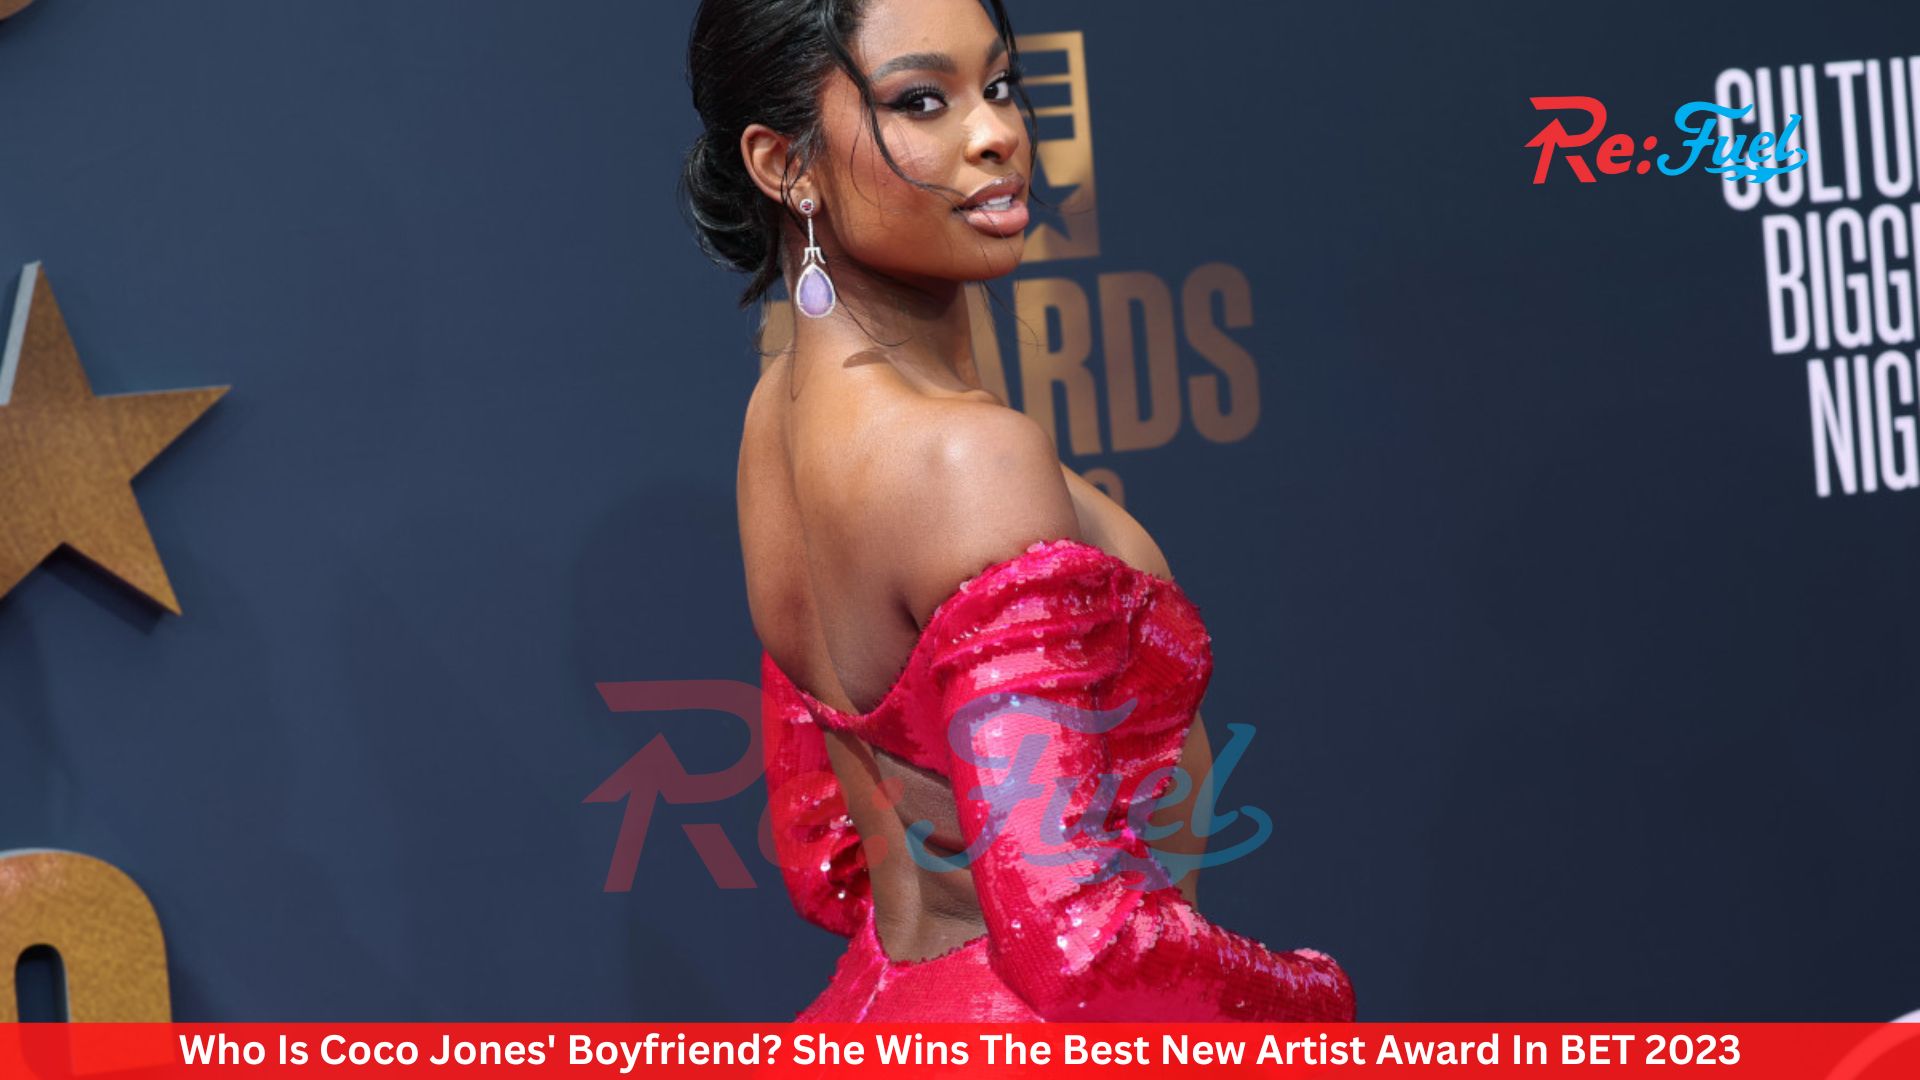 Who Is Coco Jones' Boyfriend? She Wins The Best New Artist Award In BET 2023